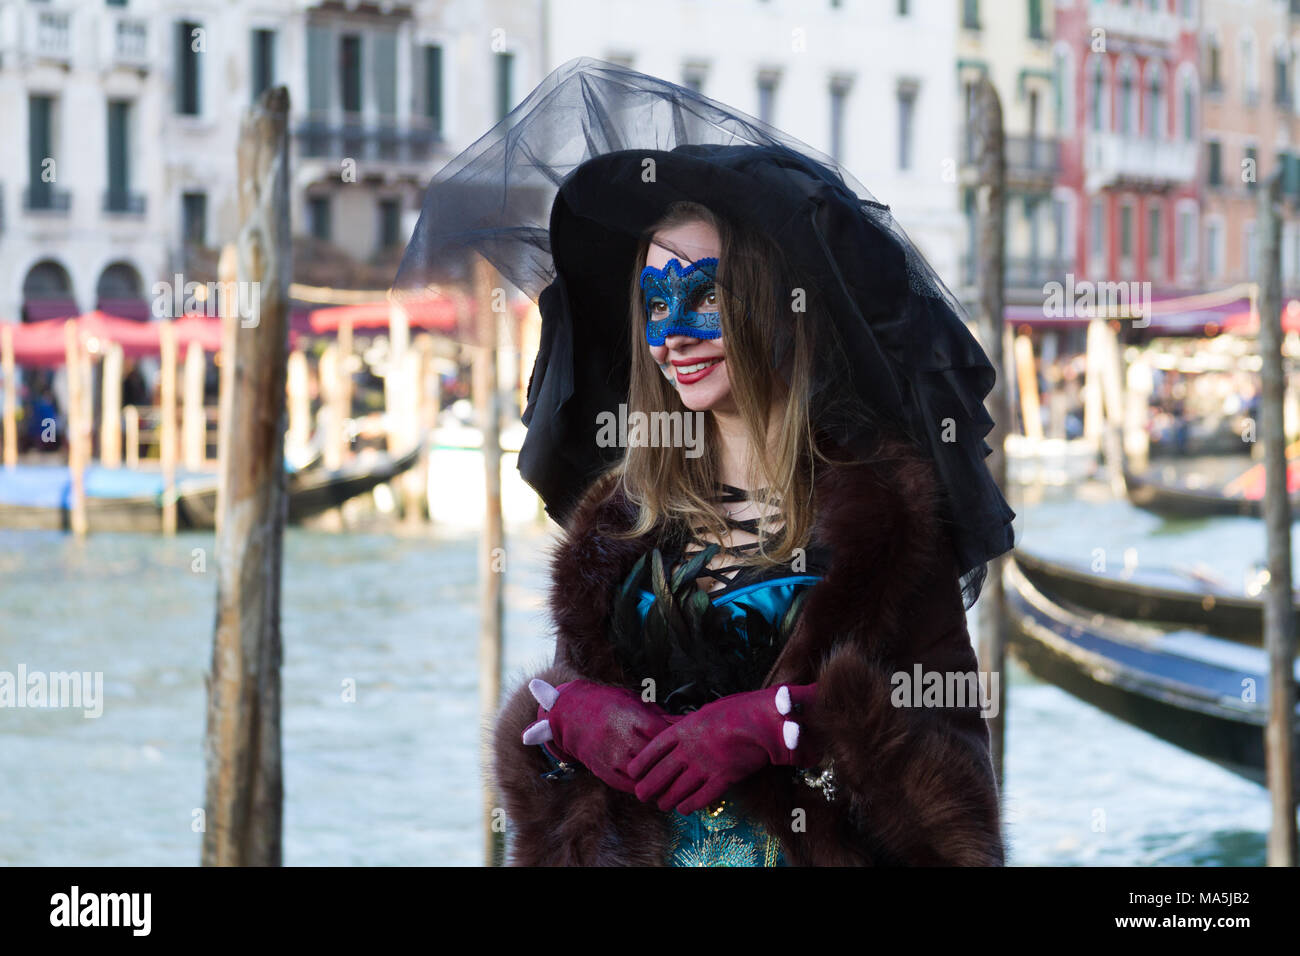 Venezia (Venise), Italie. 2 février 2018. Une jeune femme dans un costume et un masque au carnaval de Venise. Banque D'Images